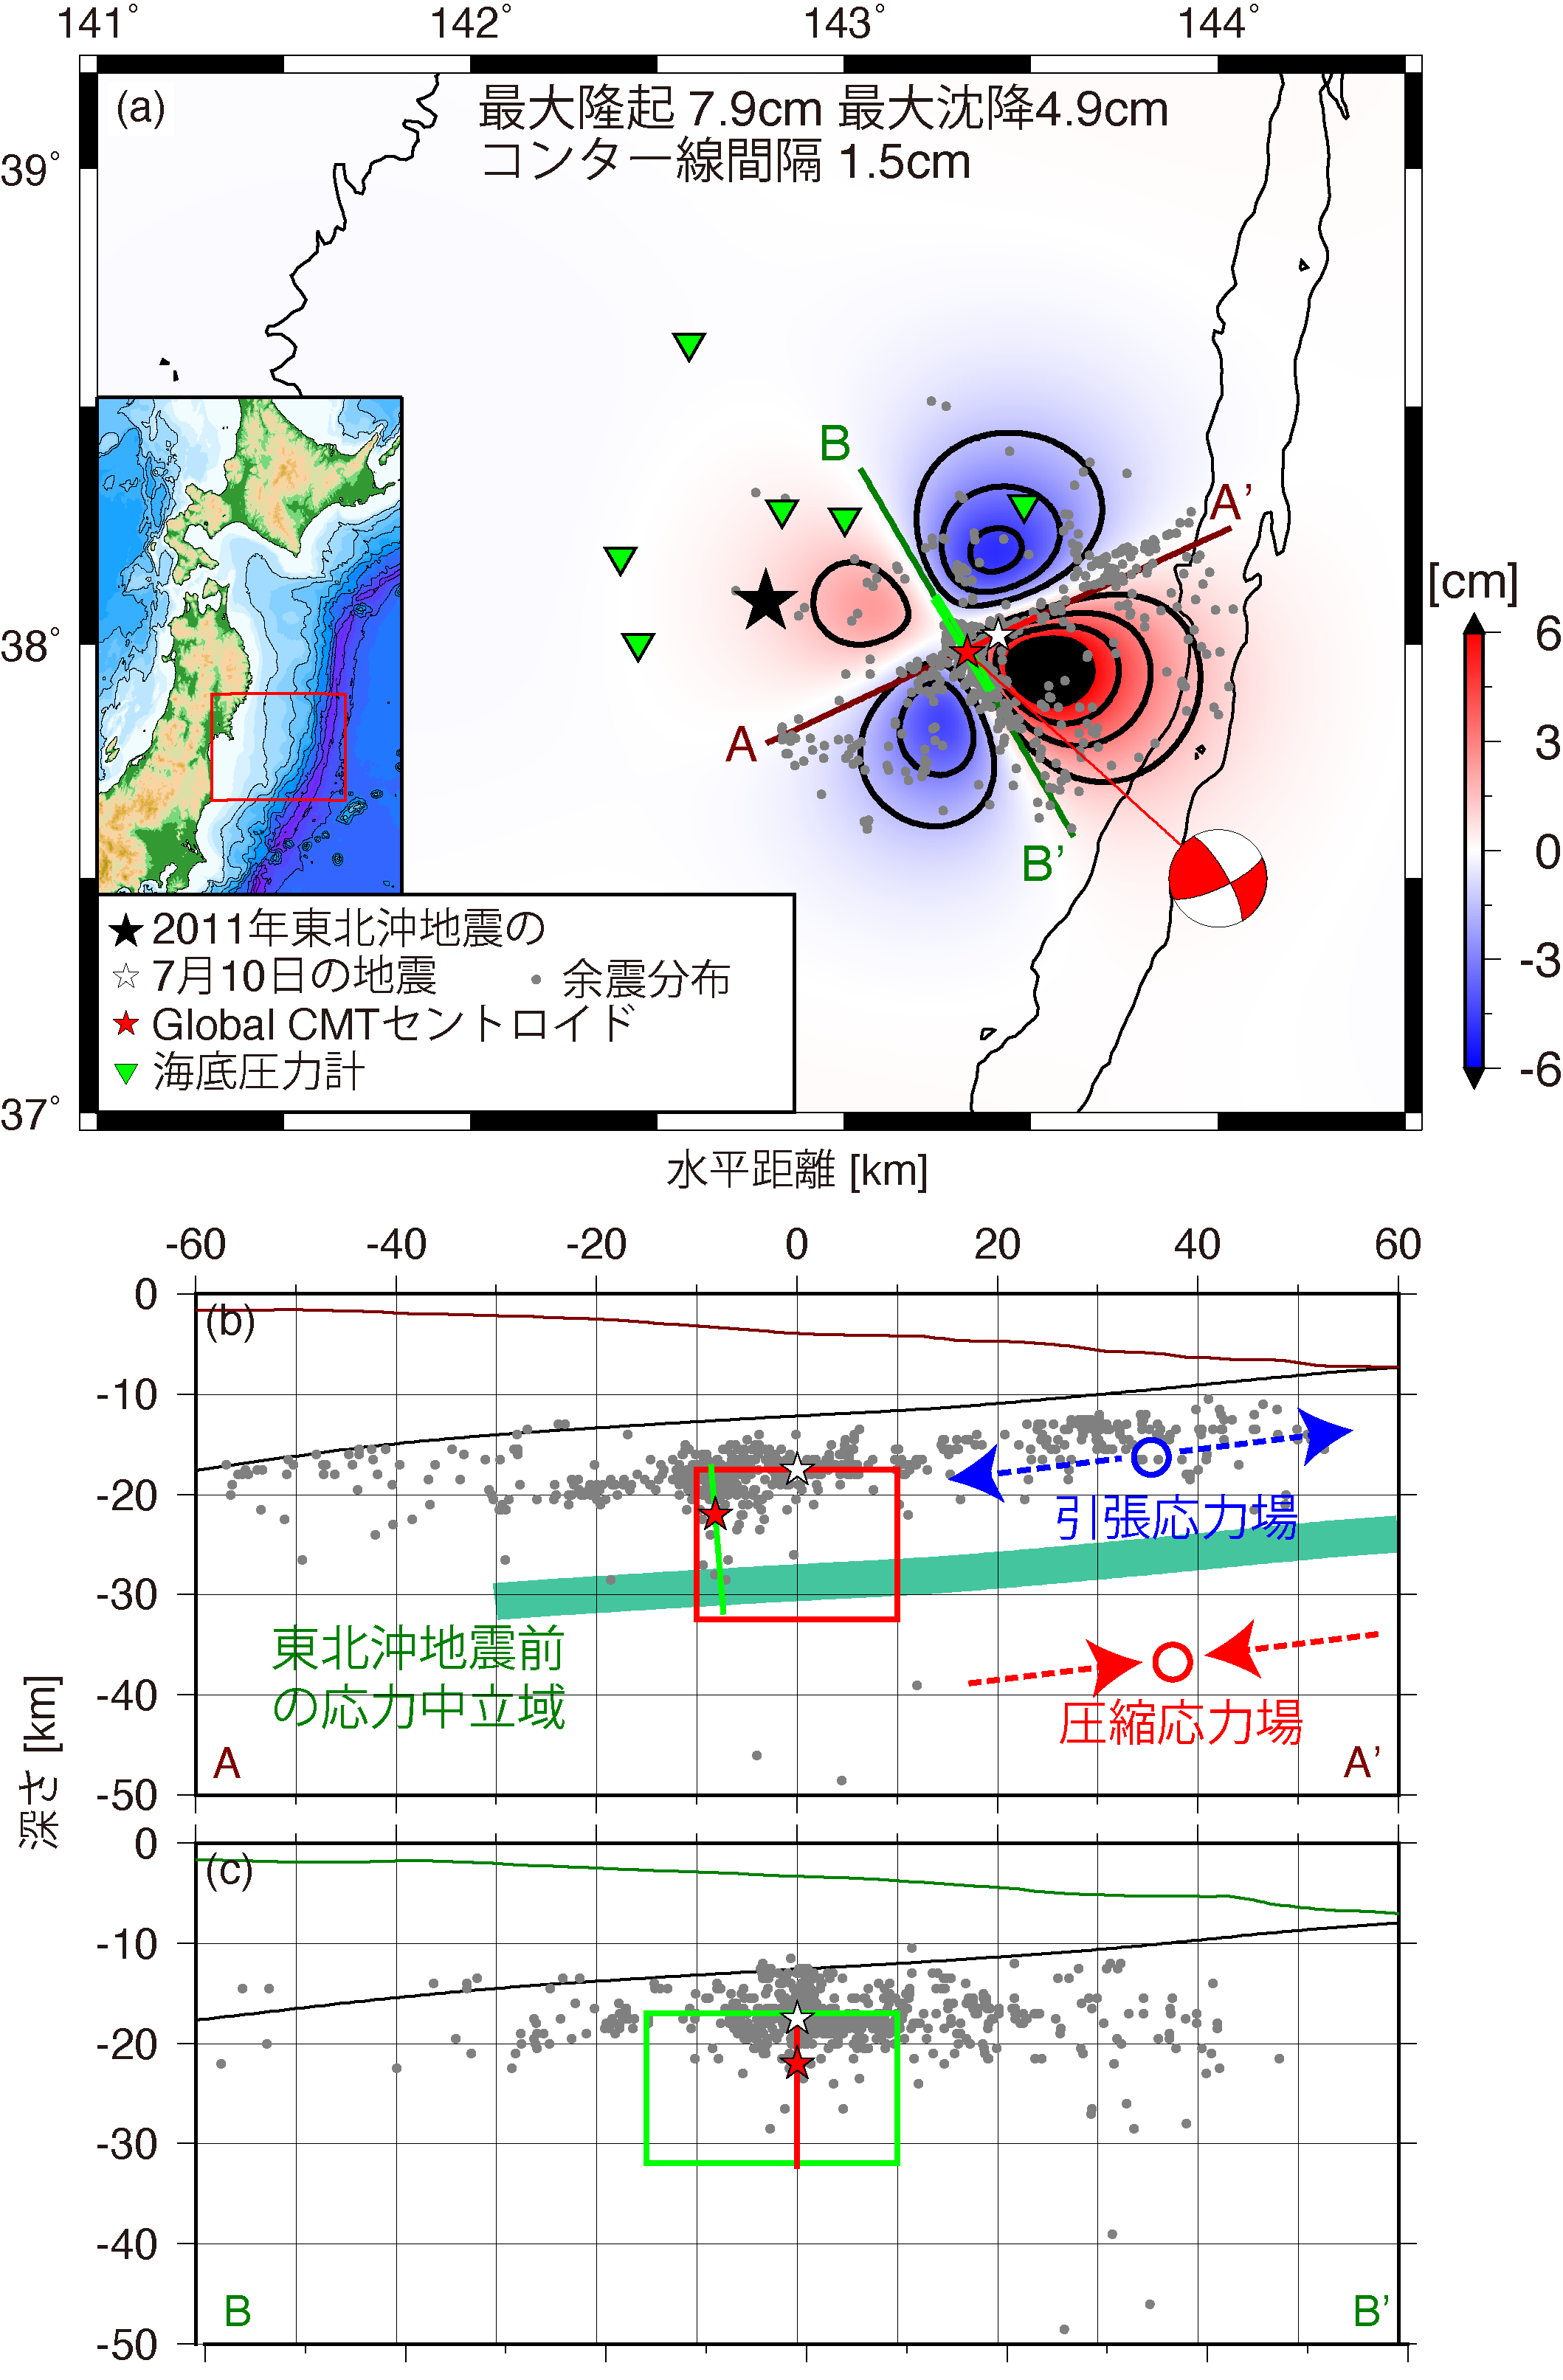 図 (a) 2011年7月10日の地震の断層モデルから得られる津波波源分布．赤および青はそれぞれ隆起，沈降の領域を示す．緑色の逆三角形は観測点の位置を表す．白星および灰色の点は7月10日の地震の震央とその余震 (Obana et al., 2013) を，赤星はGlobal CMTのセントロイドを表す．黒星は東北沖地震の震央 (Suzuki et al., 2012) を表す．(b) A–A’ および (c) B–B’側線に沿った鉛直断面図．最良モデルの断層の位置と余震分布も示した．スラブ内浅部の応力場の模式図も示してある．